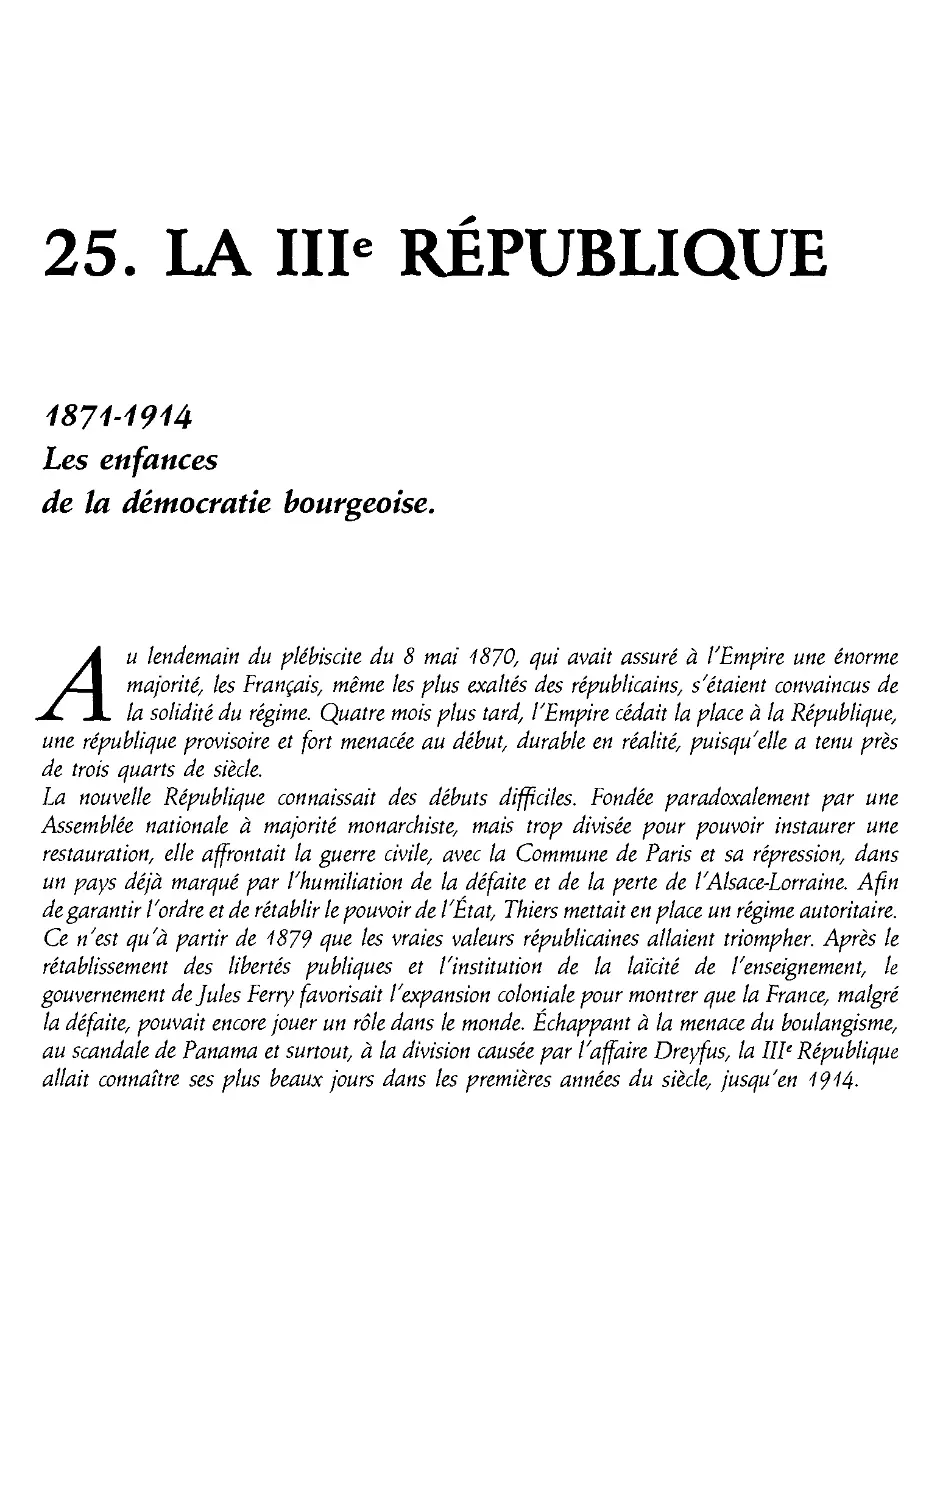 25. La IIIe Republique, 1871-1914 [738]